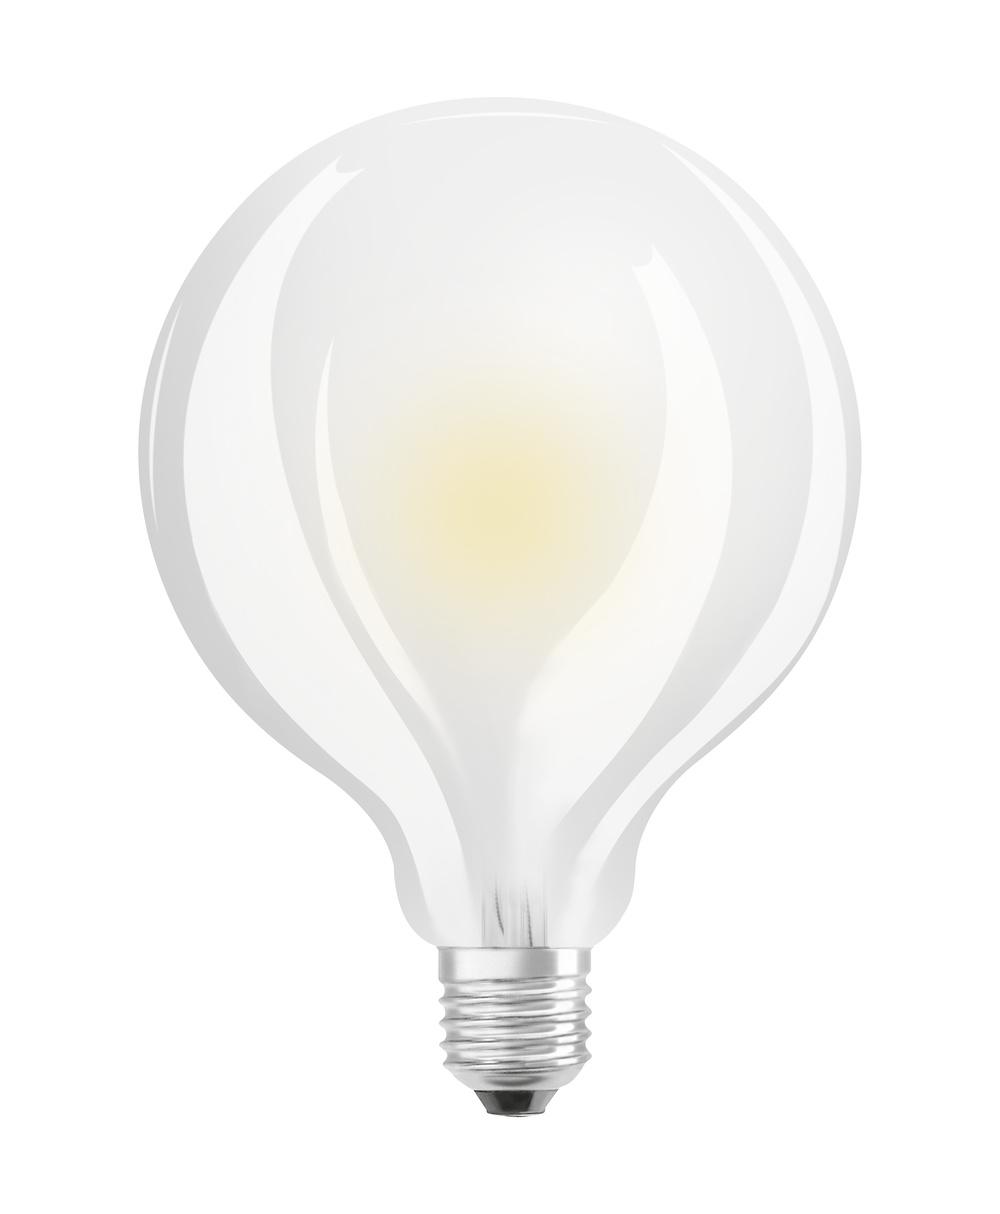 Ledvance LED-Leuchtmittel LED CLASSIC GLOBE P 6.5W 827 FIL FR E27 – 4099854062384 – Ersatz für 60 W - 4099854062384